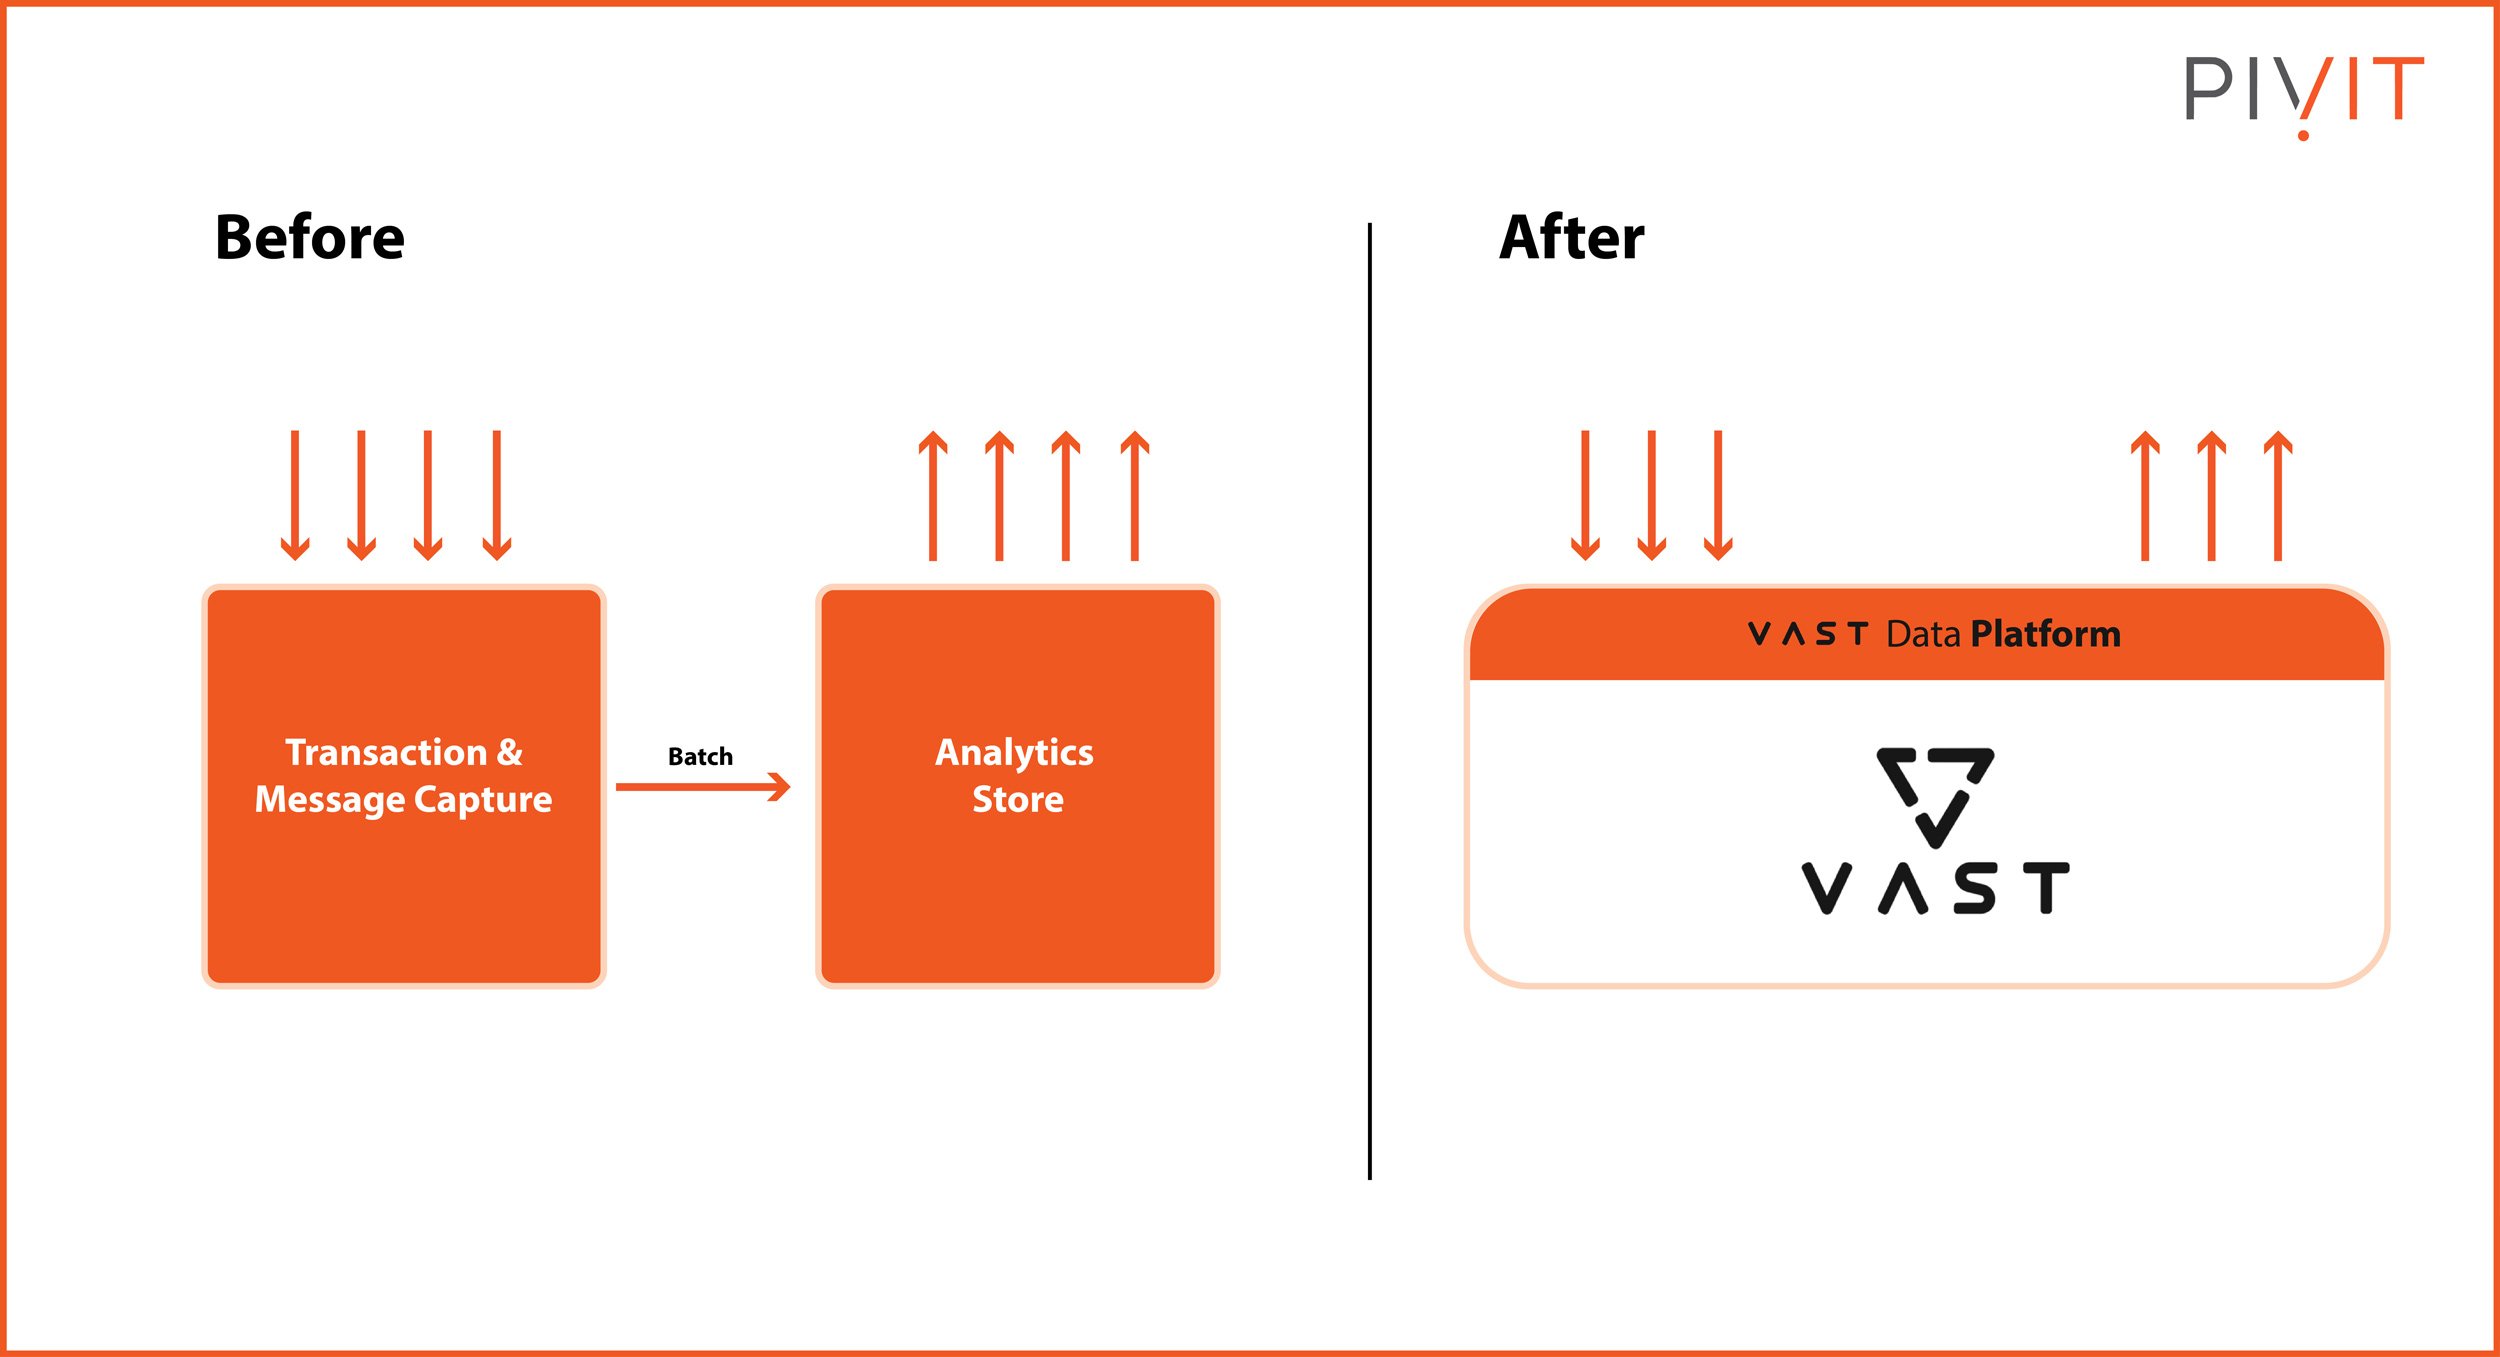 Before and after Vast Data Platform